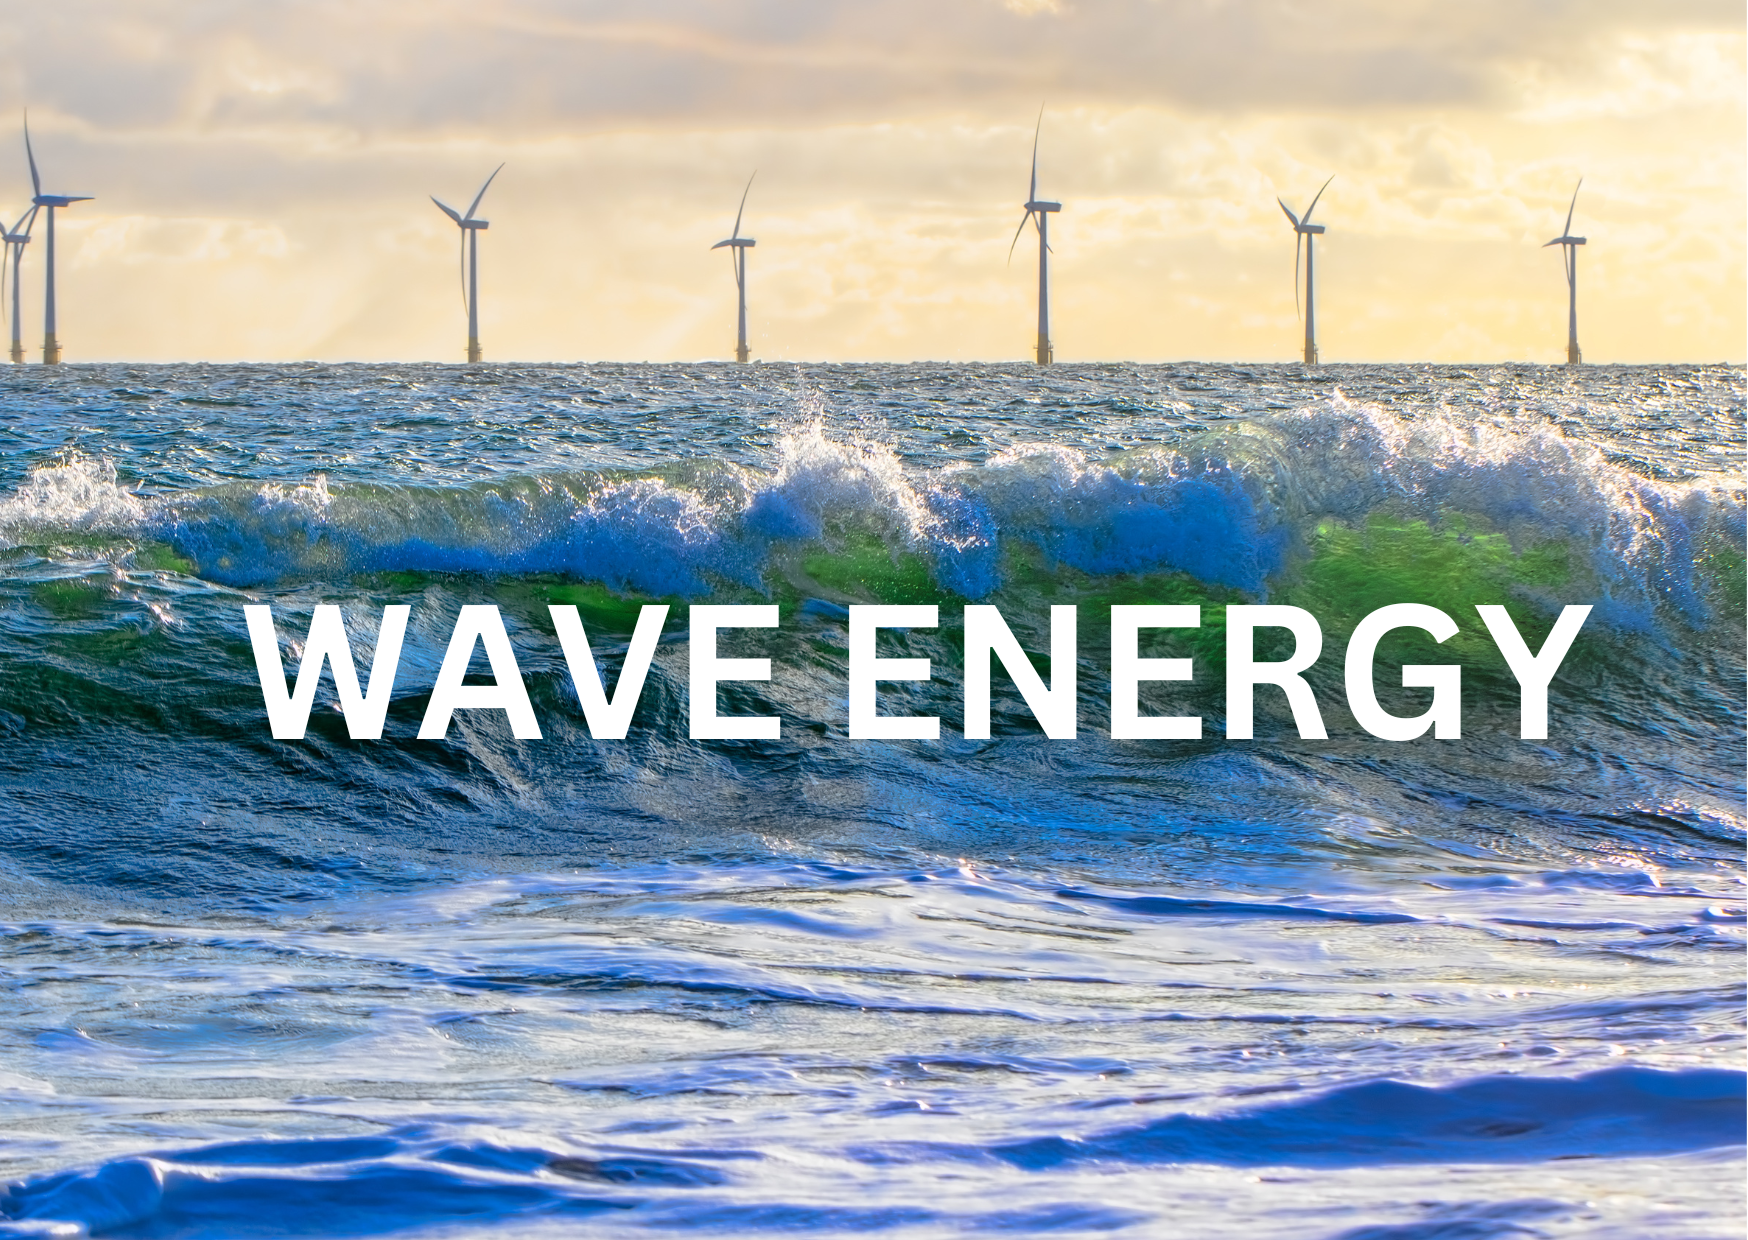 wave energy turbine